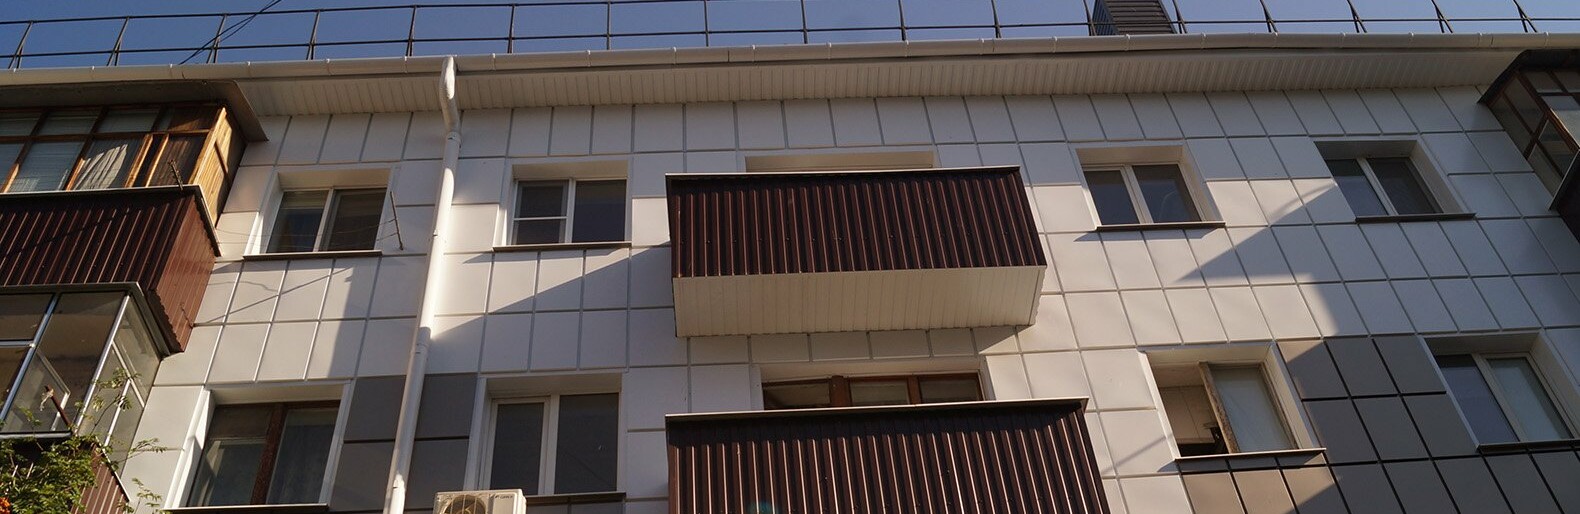 Белгородская область занимает средние позиции в рейтинге доступности ипотеки по стране